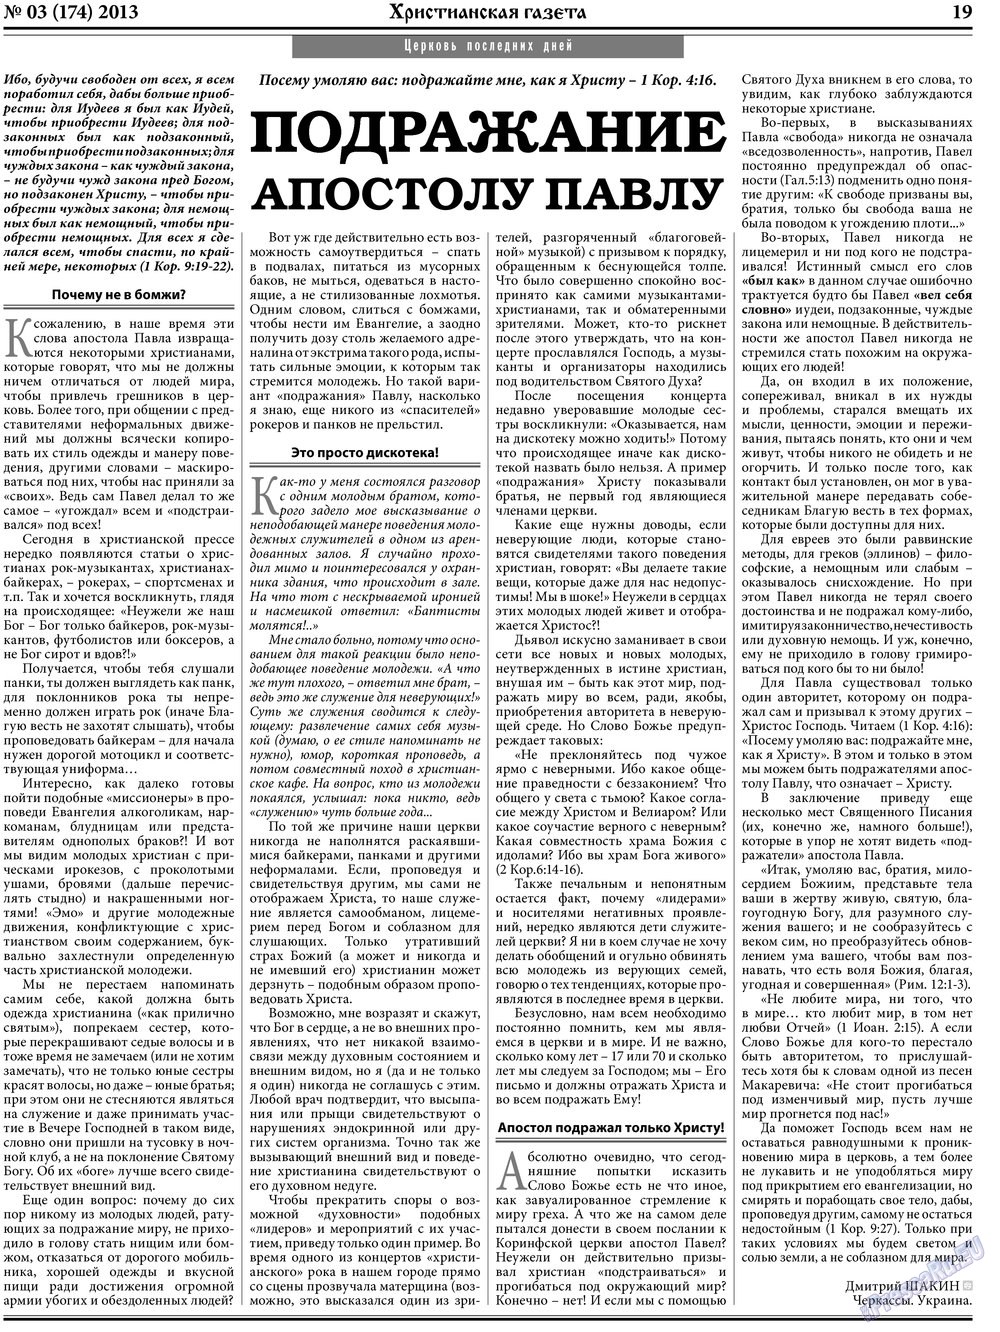 Христианская газета, газета. 2013 №3 стр.27